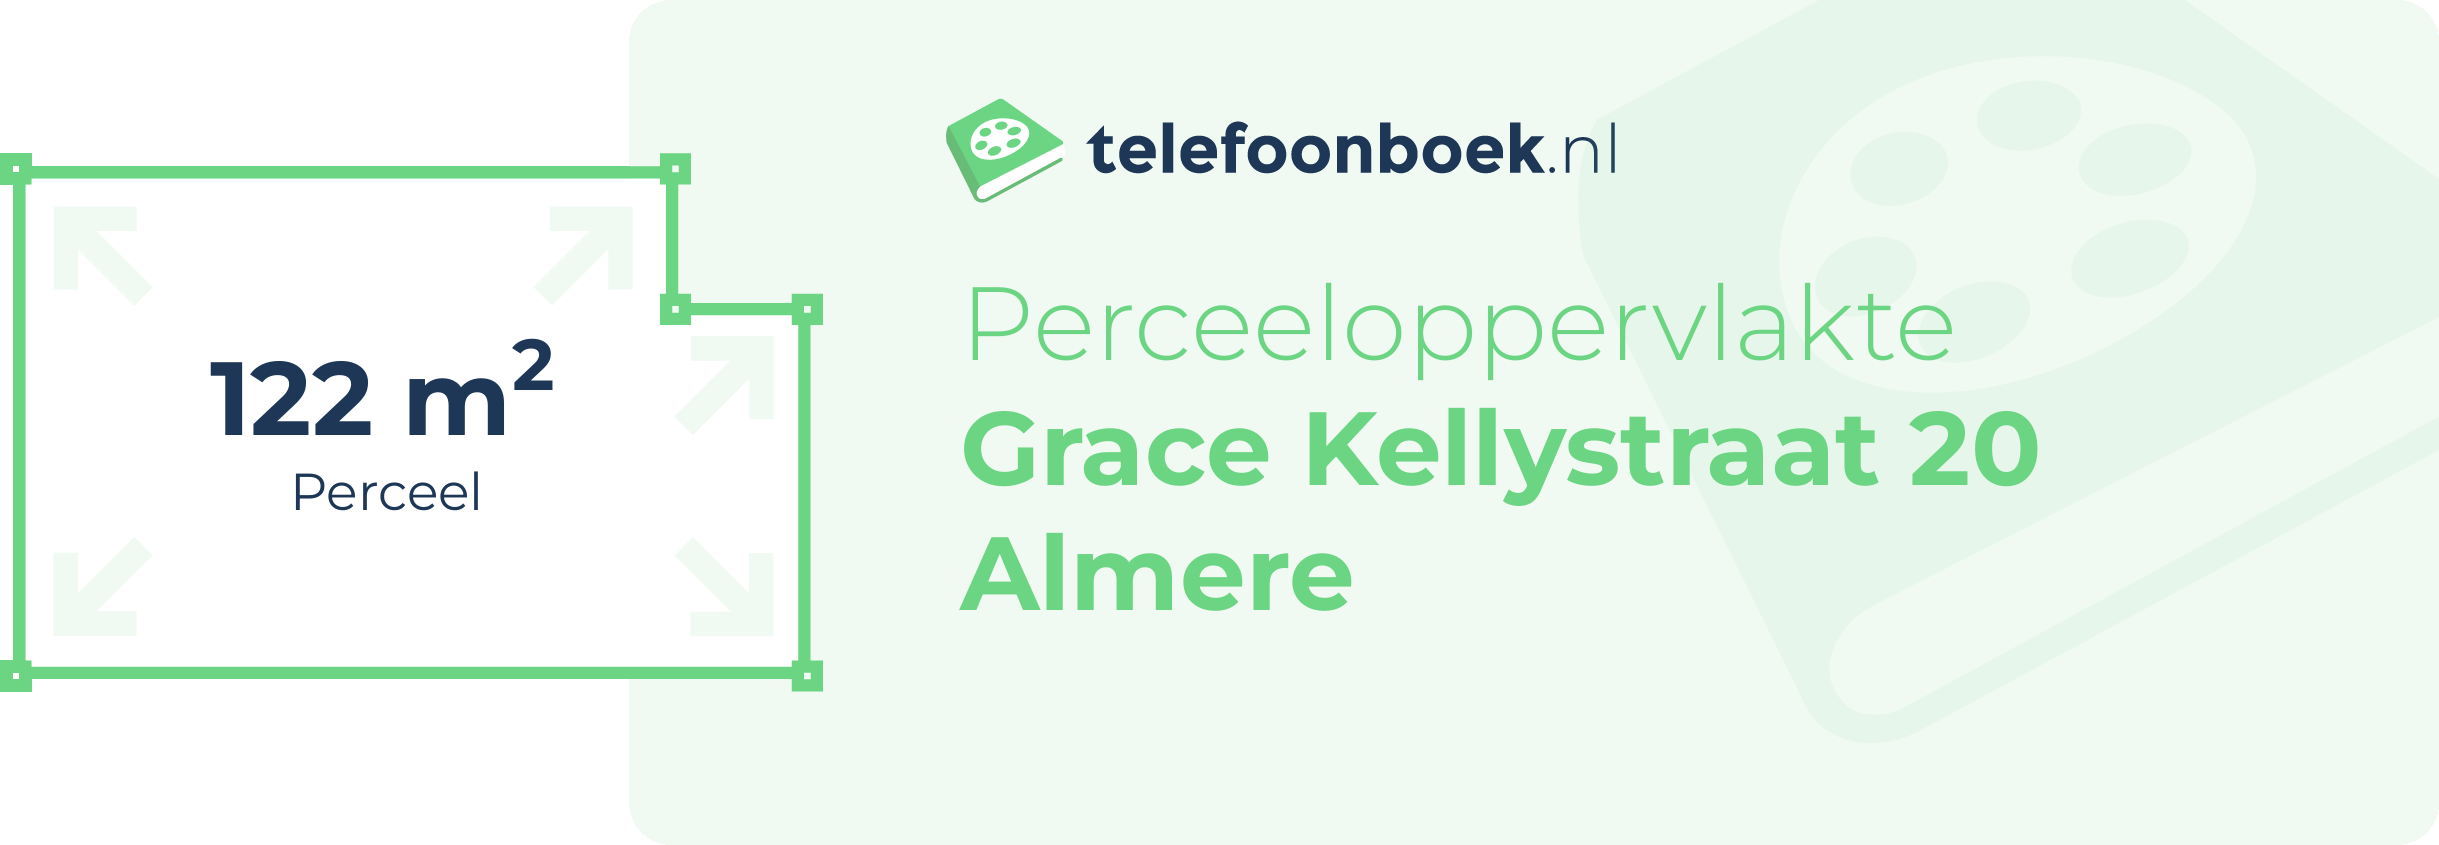 Perceeloppervlakte Grace Kellystraat 20 Almere